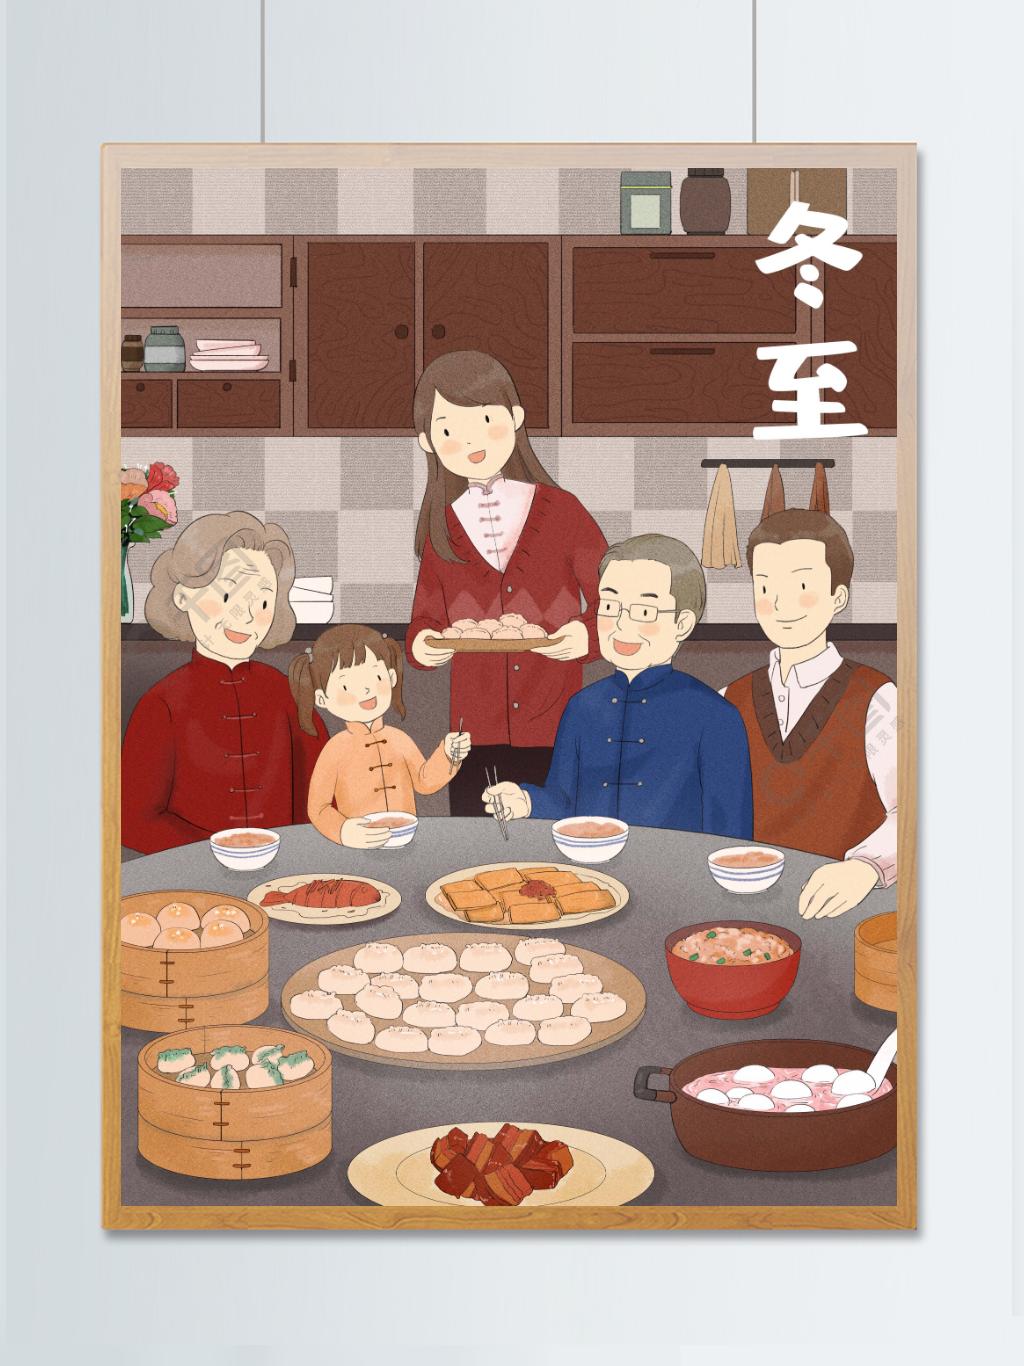 冬至一家人在家里吃饺子吃汤圆其乐融融插画